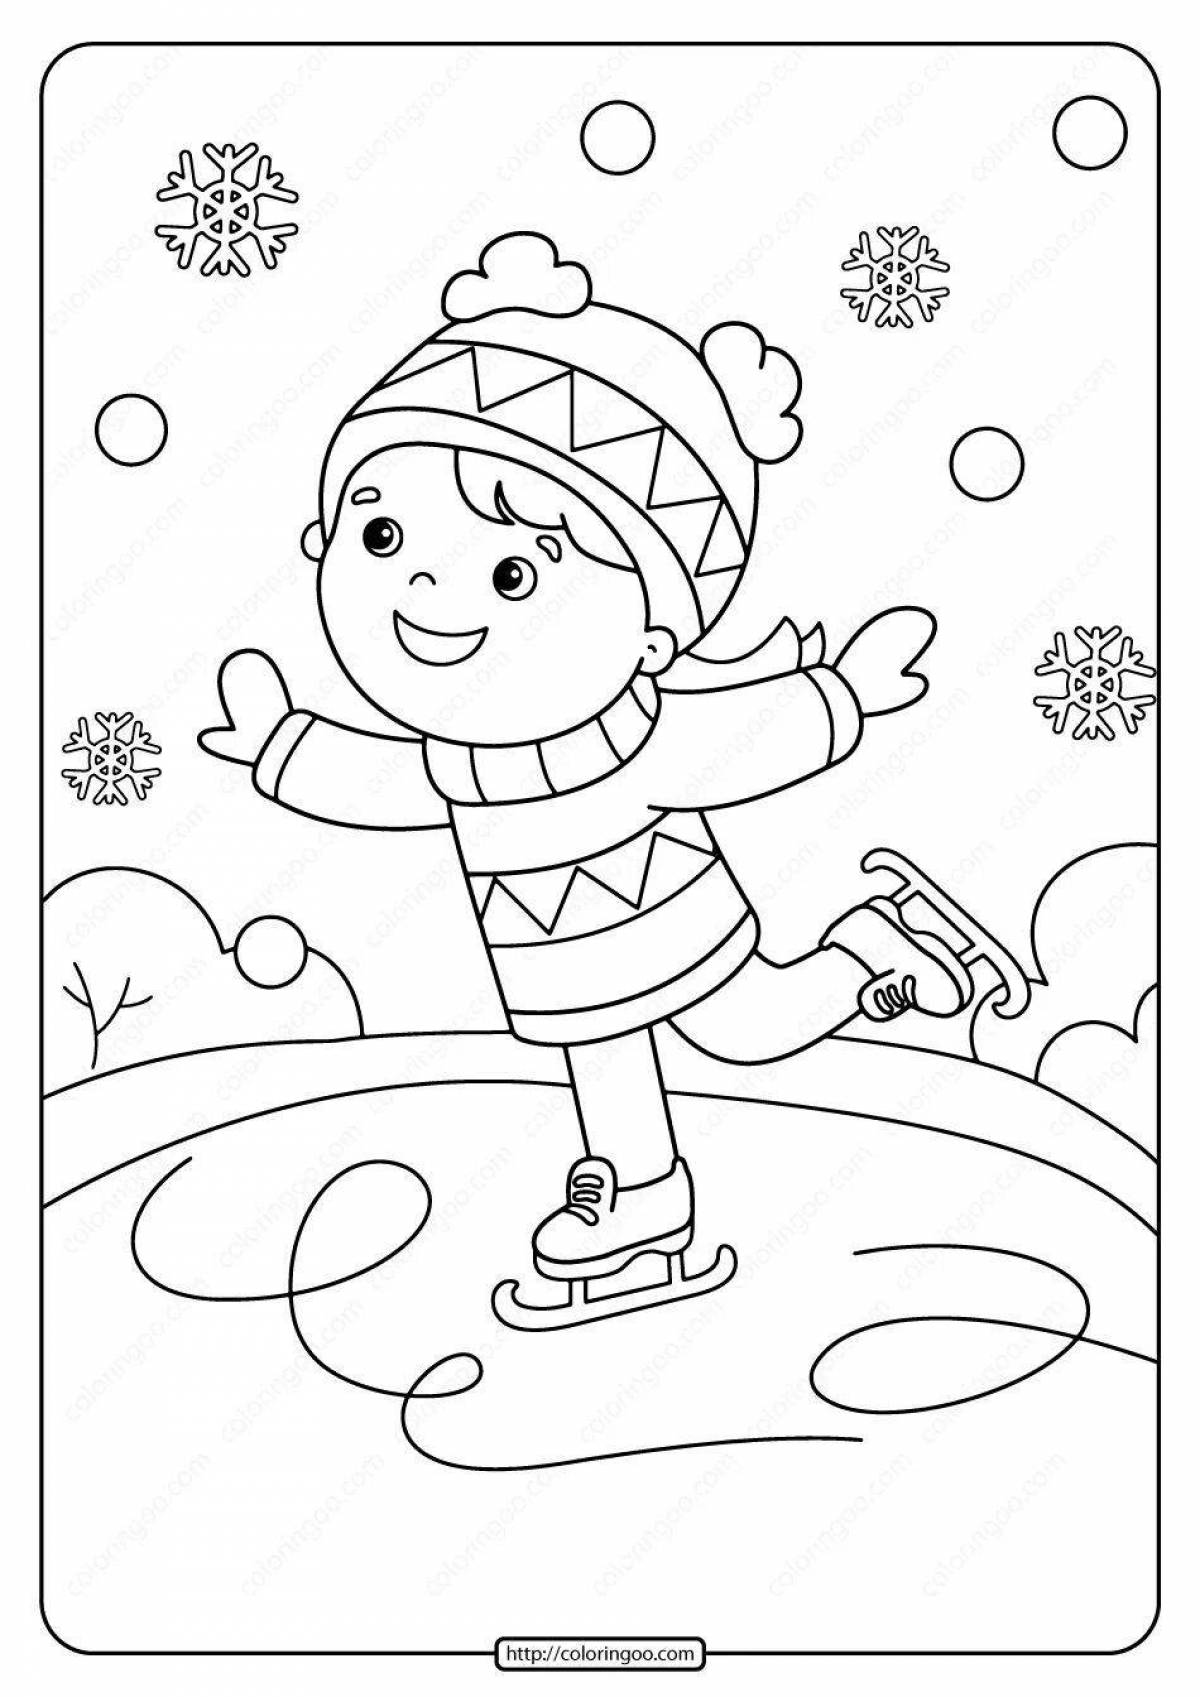 Fairy coloring for children on skates